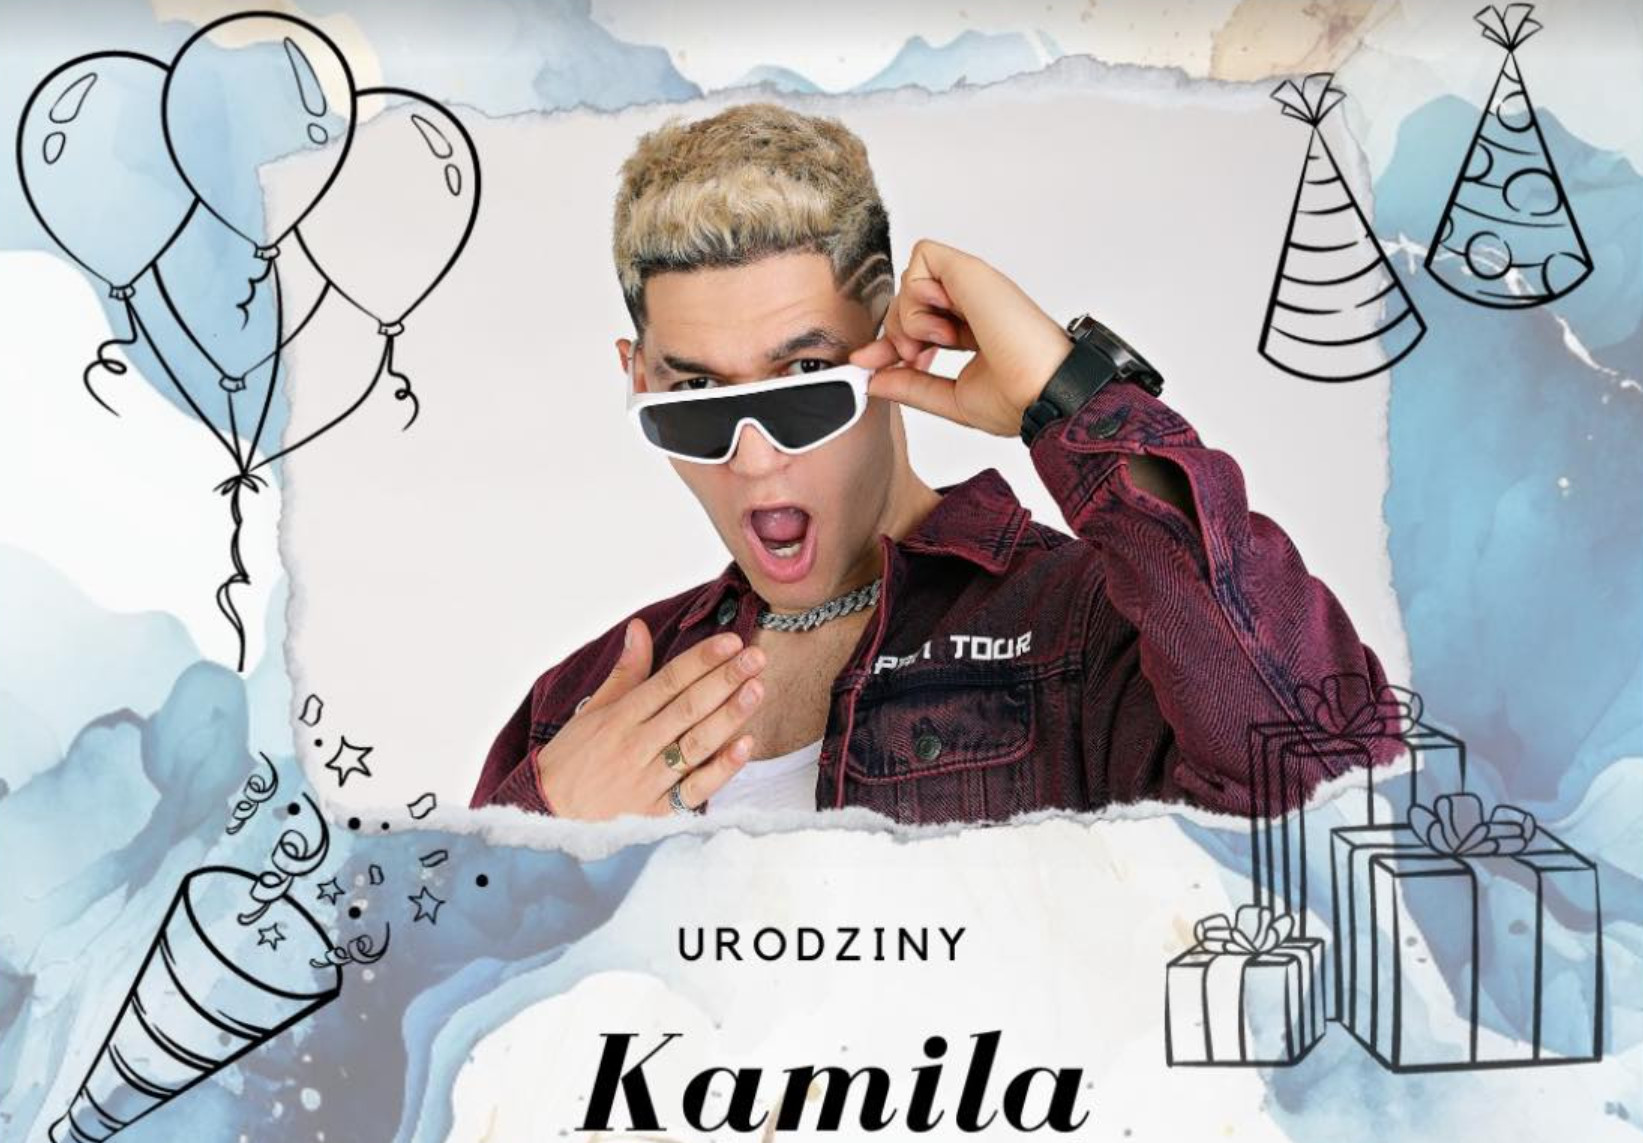 Wielkie urodziny Kamila Kossakowskiego DiscoBoys i klubu Mega Music Wilga już 11 listopada!